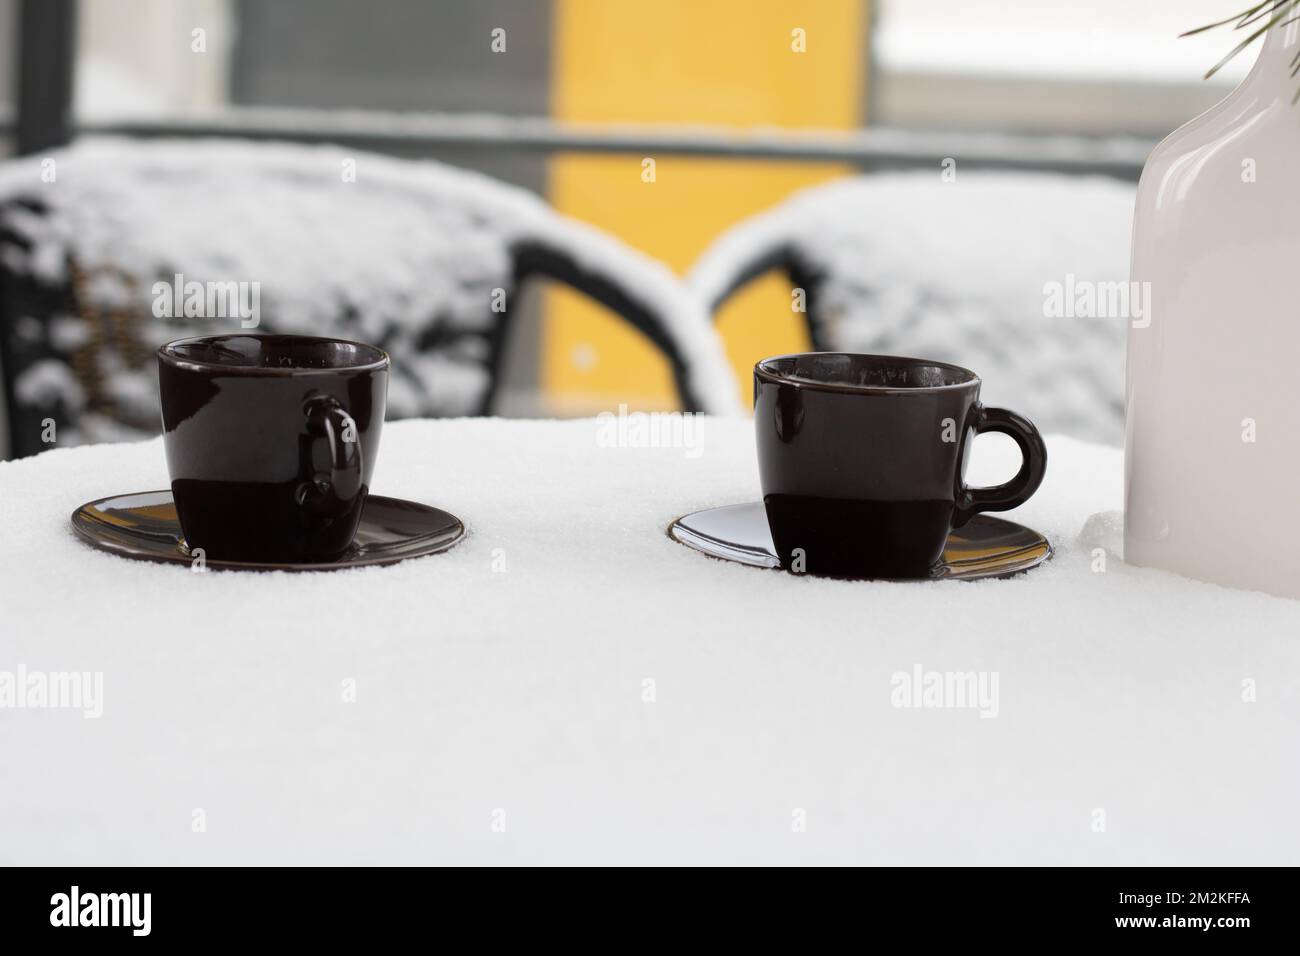 photo sur une table recouverte de neige il y a des tasses de café sur les soucoupes Banque D'Images